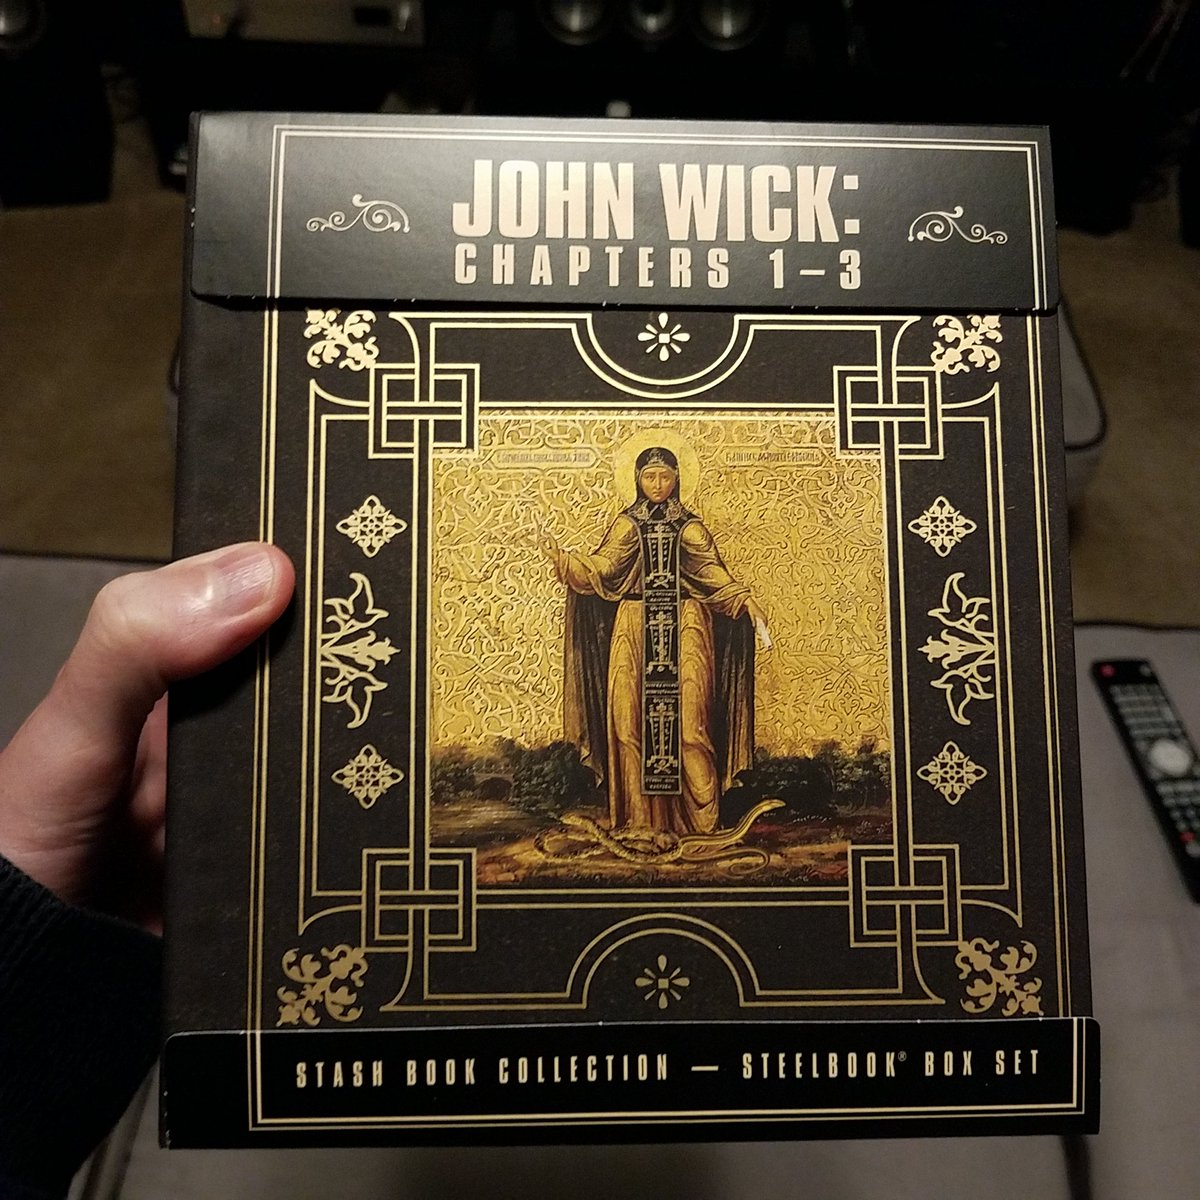 Hd Movie Source On Twitter Starting The John Wick 4k Steelbook